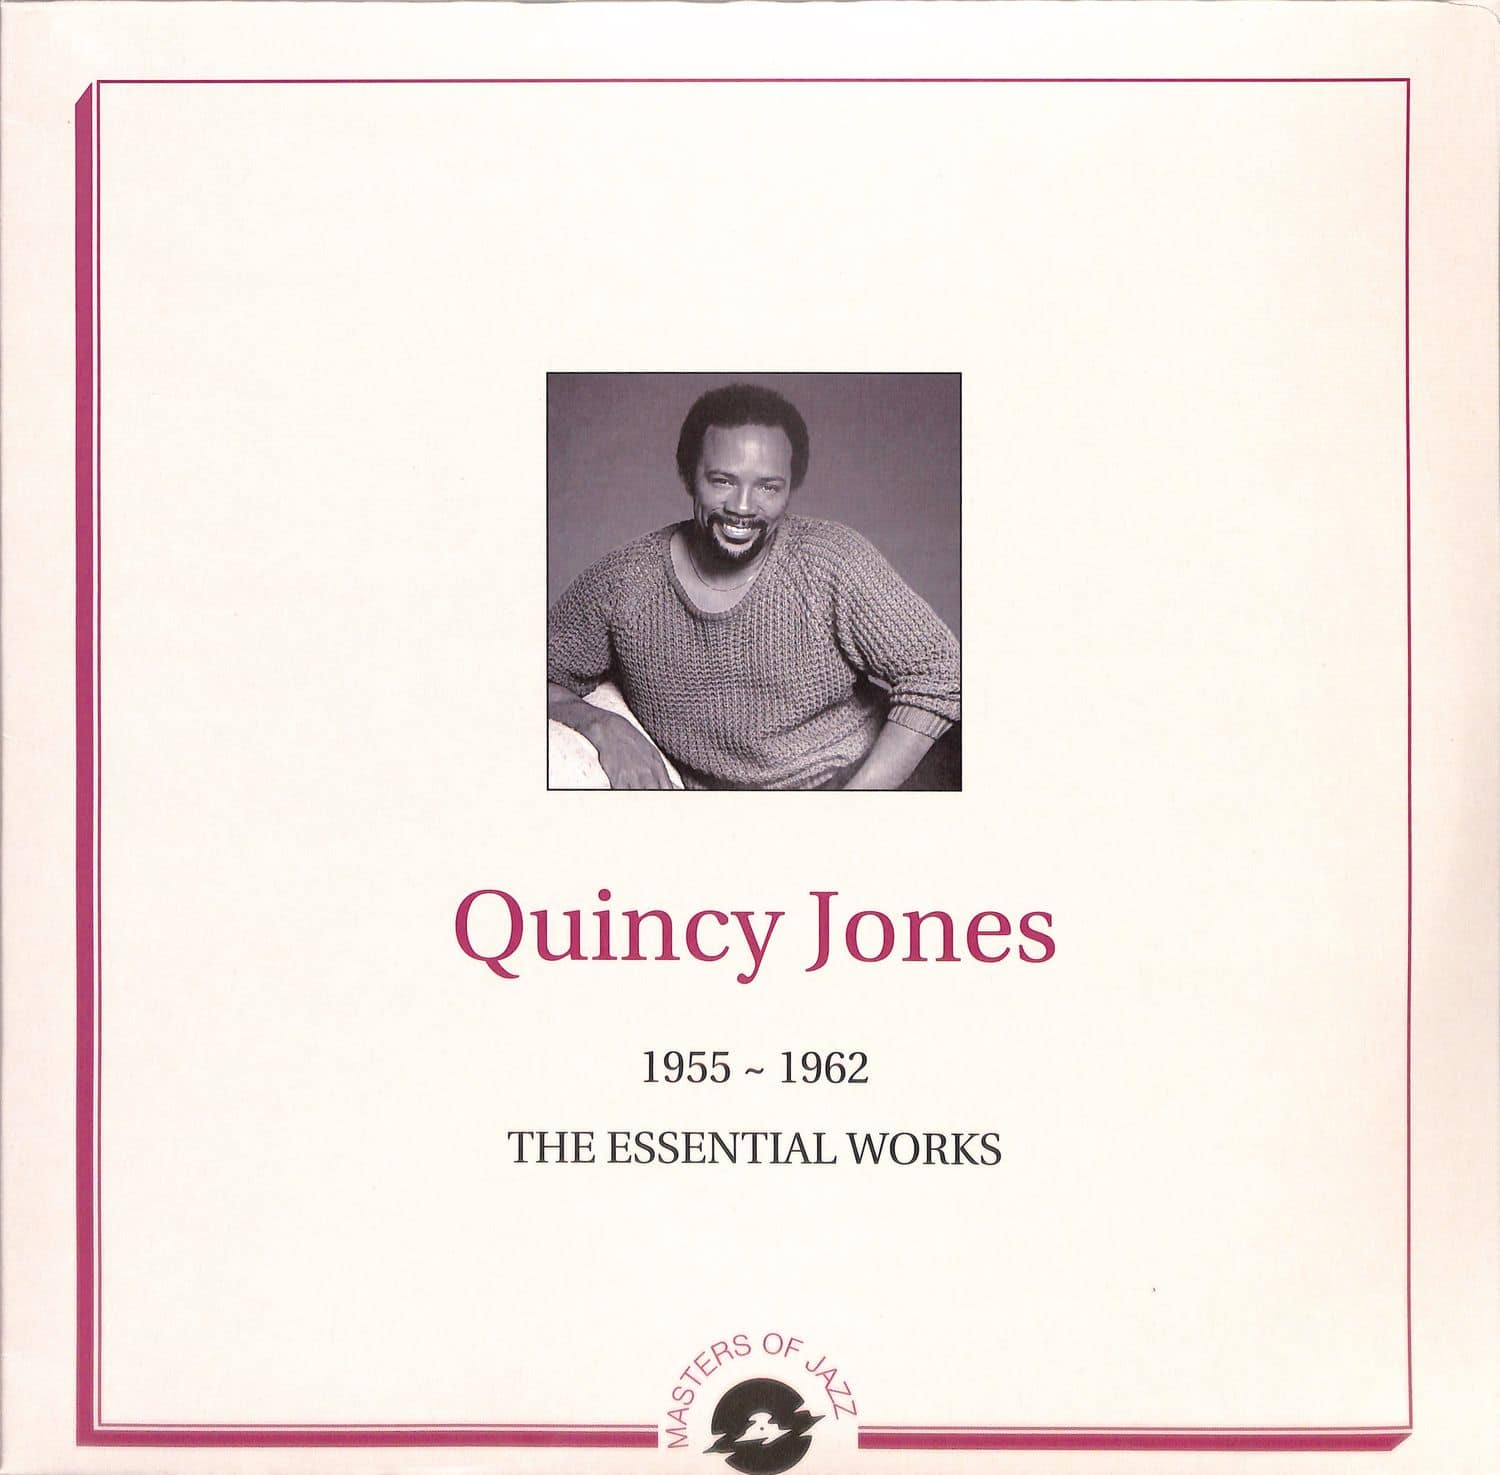 Quincy Jones - THE ESSENTIAL WORKS 1955-1962 